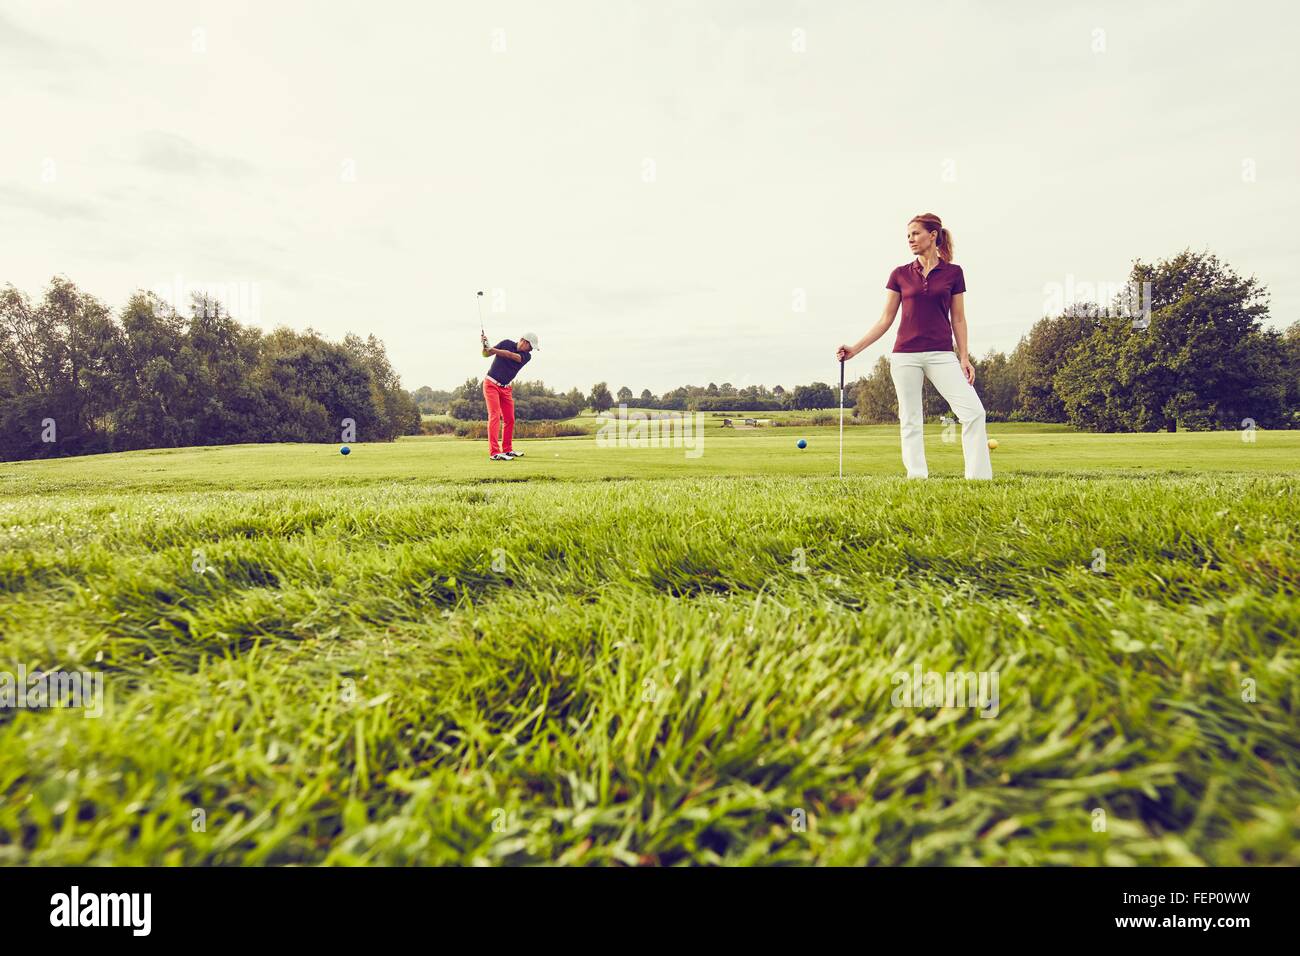 Les golfeurs jouer au golf sur le cours, Korschenbroich, Düsseldorf, Allemagne Banque D'Images